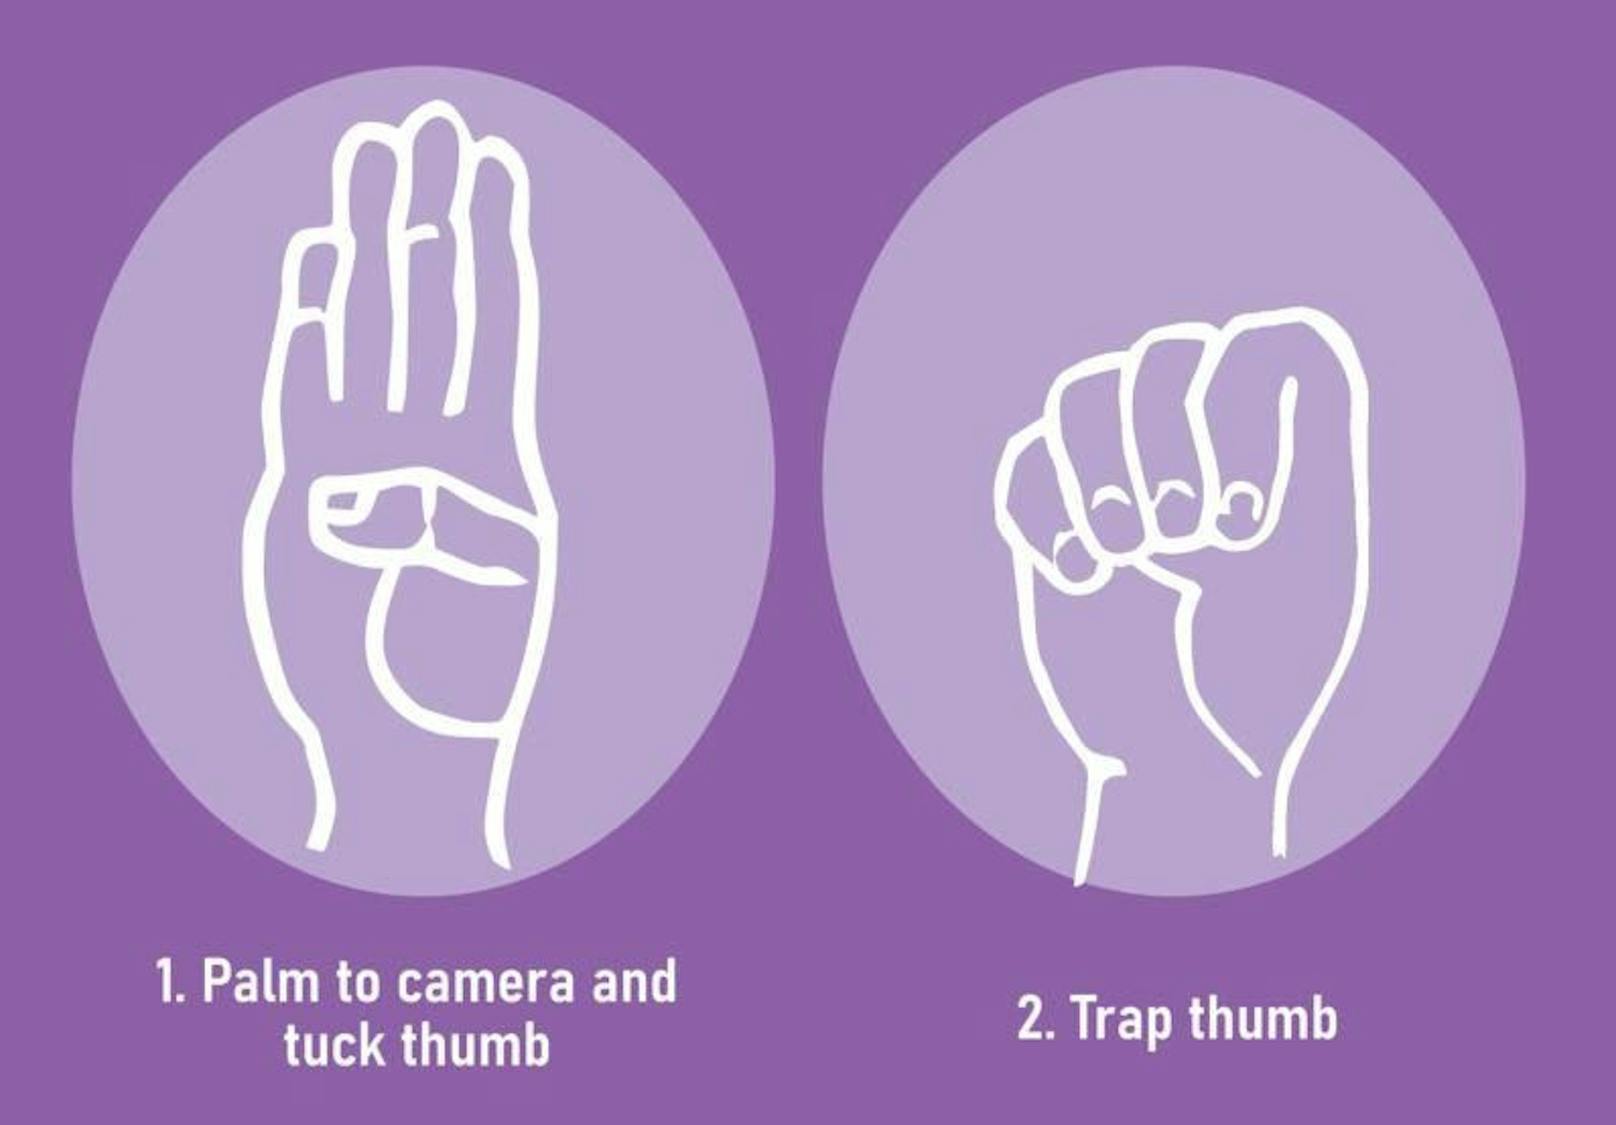 Das Handzeichen wurde von der Canadian Women’s Foundation im Jahr 2020 erfunden.